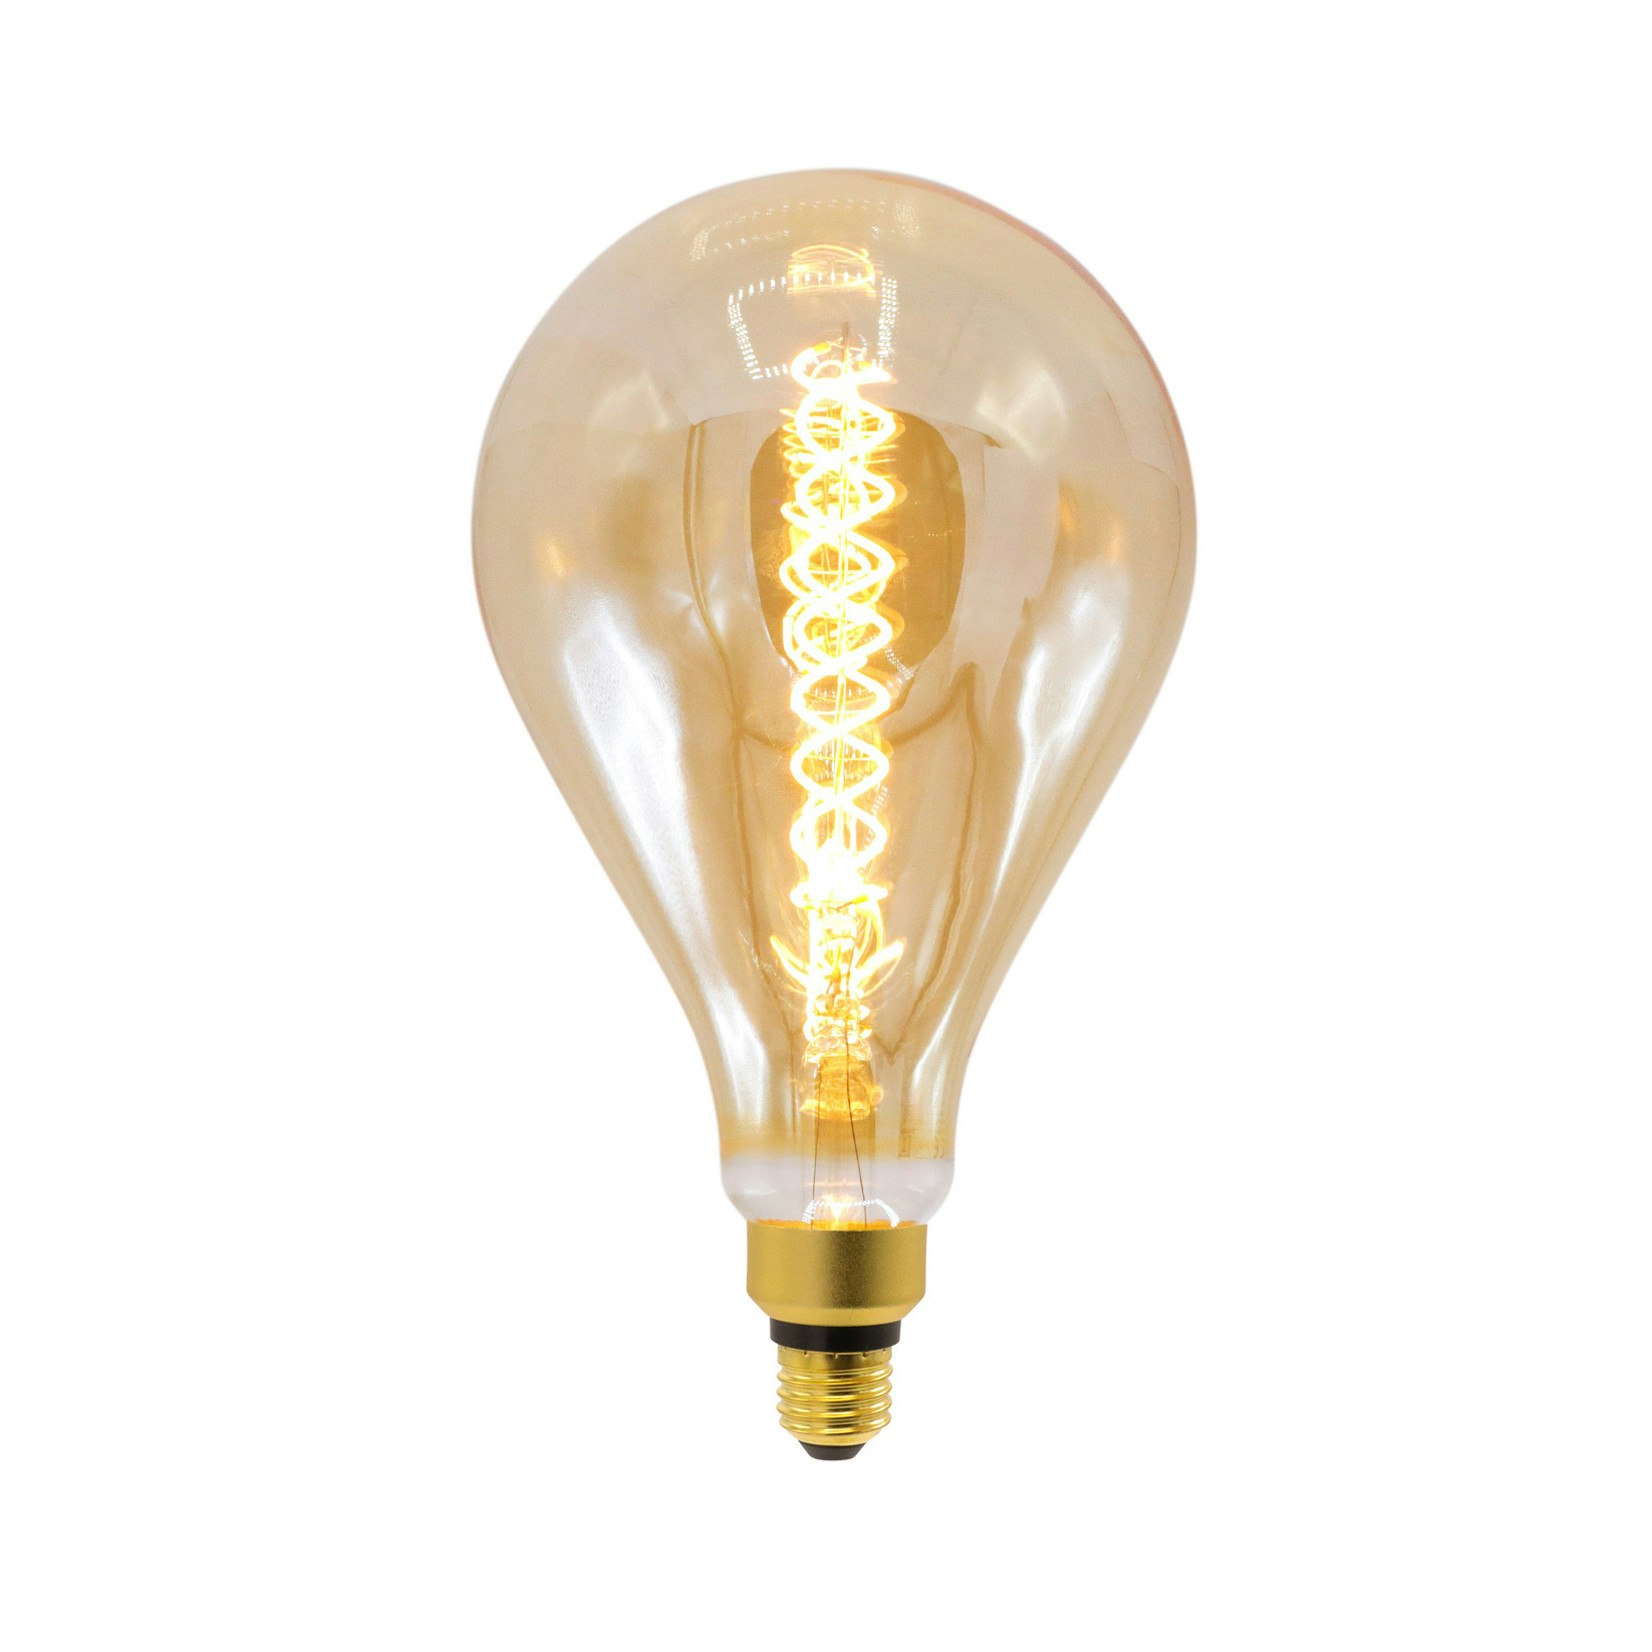 3-pack E27 dimbar XXL LED-lampa med spiralfilament och bärnstensfärgat glas  - Ø160 - Ly.se - Smarta saker till de bästa priserna